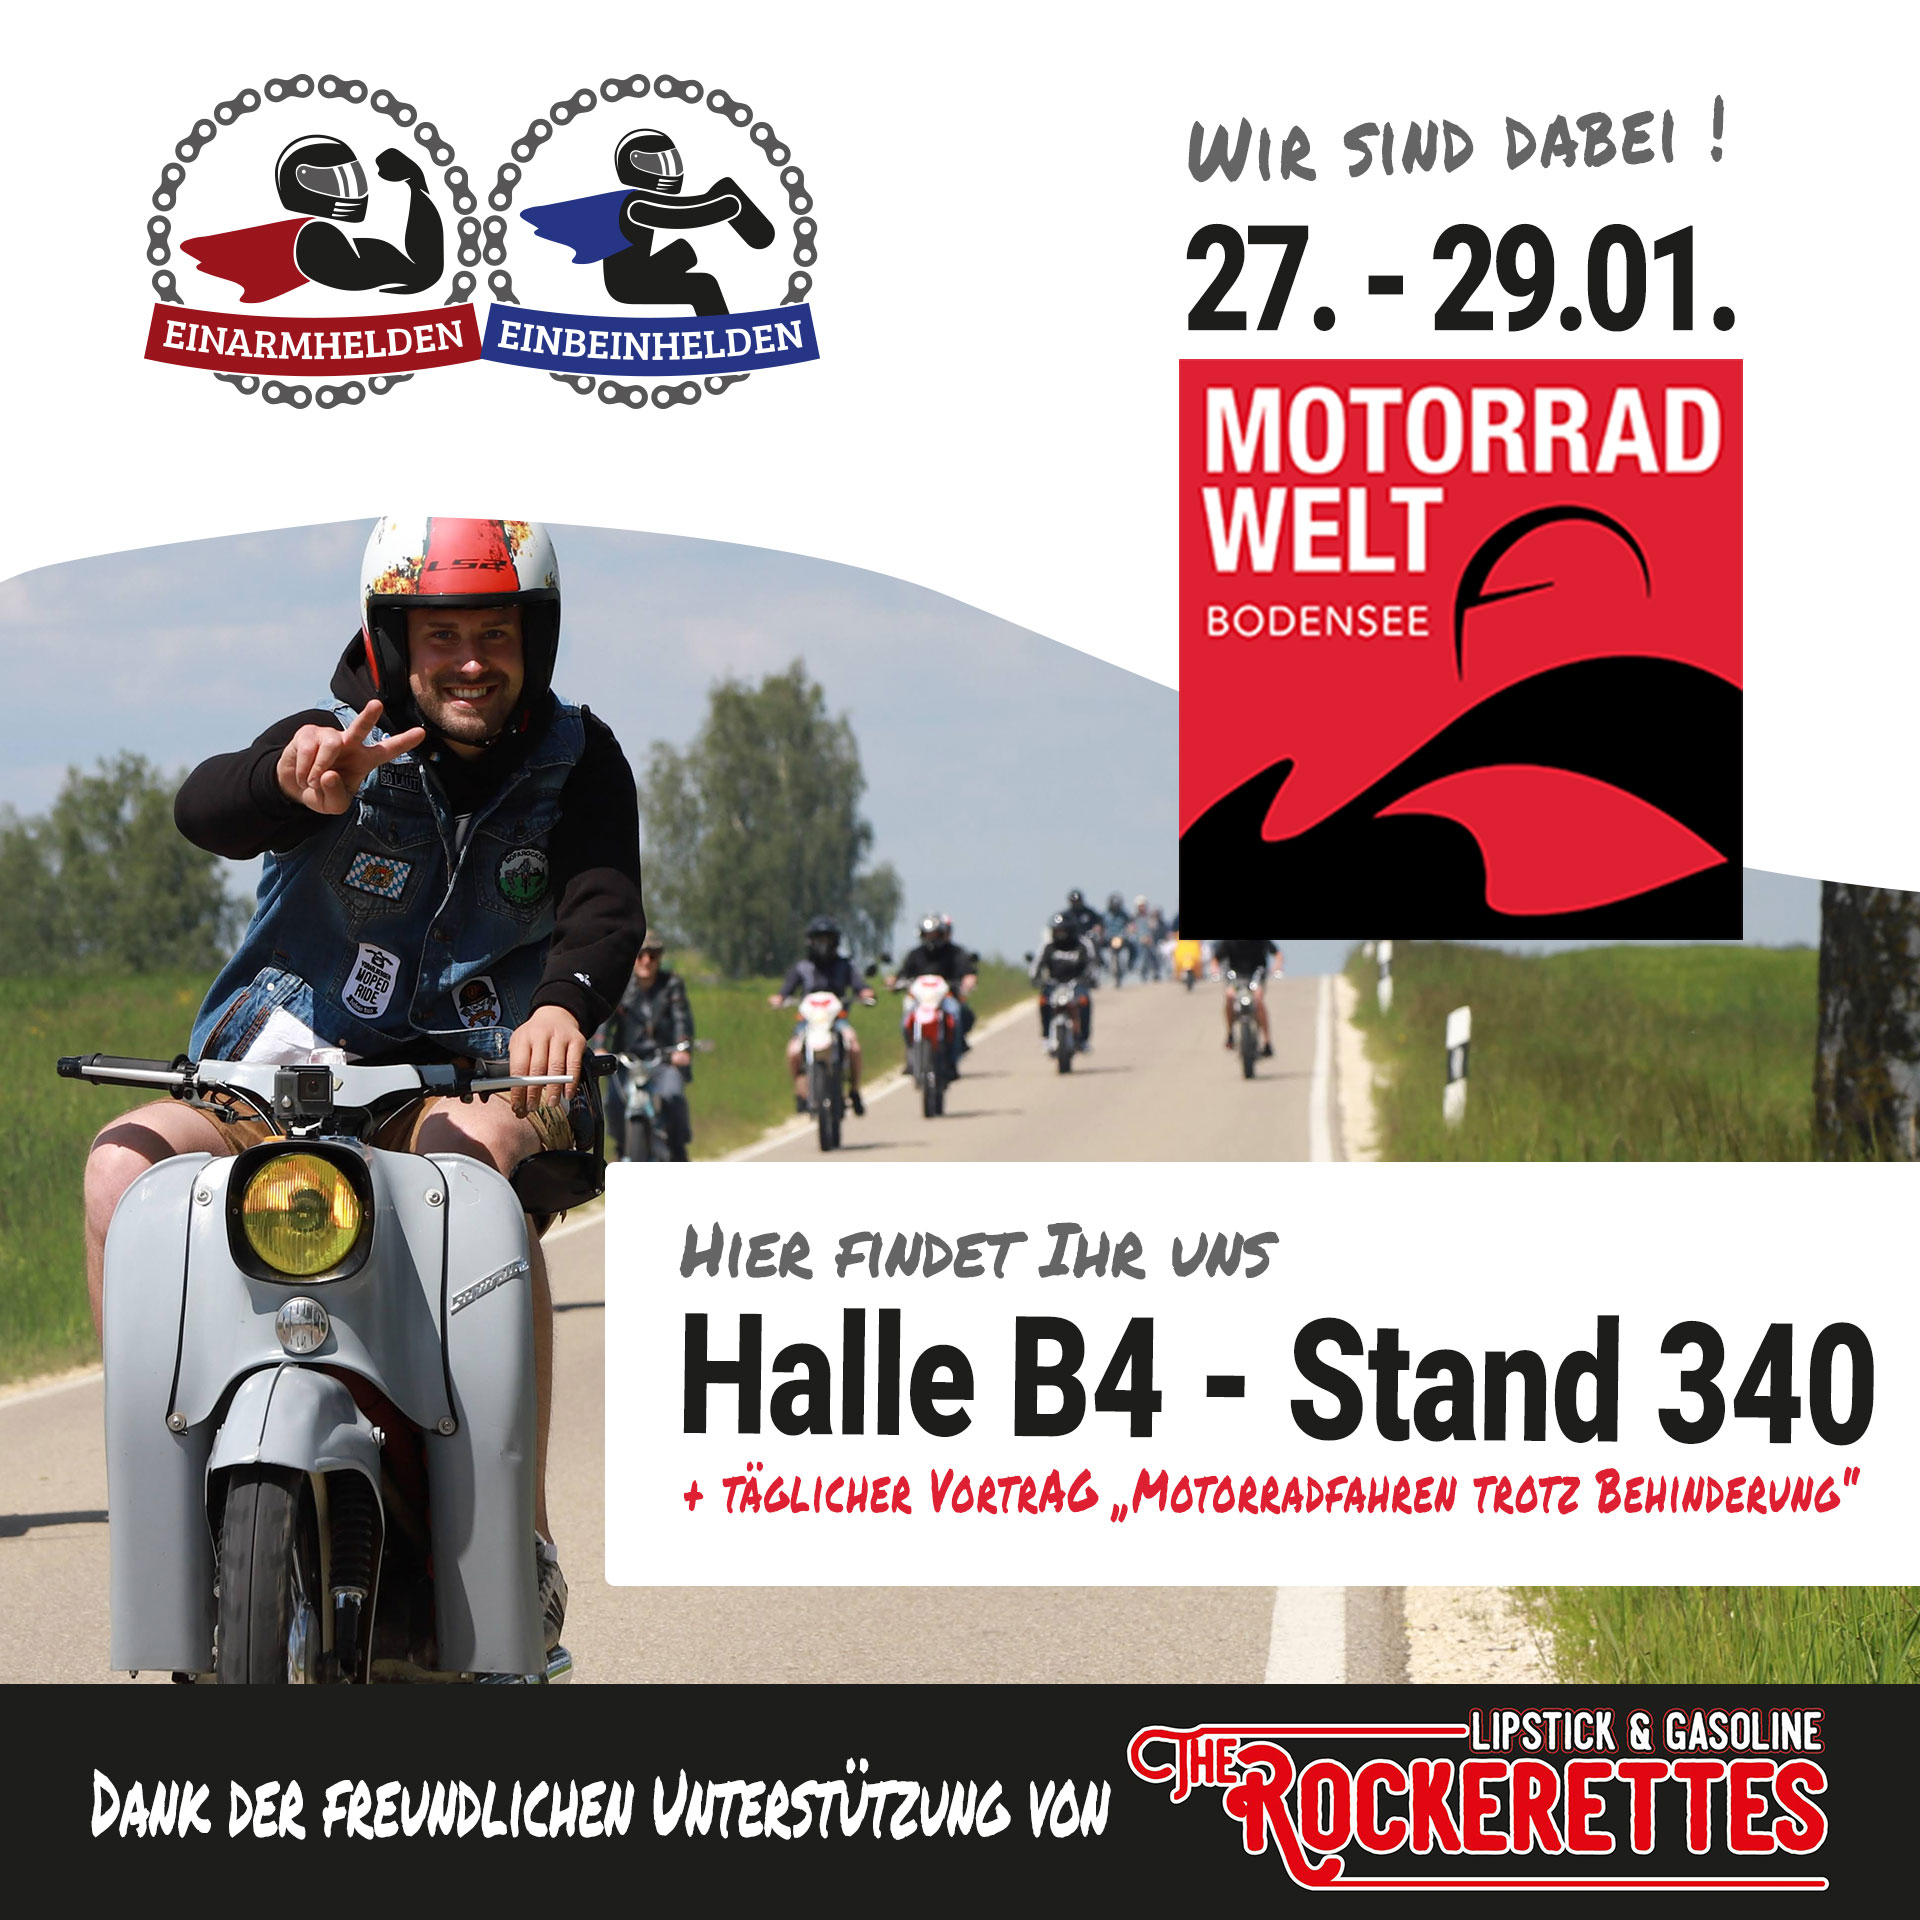 202301-Werbung-Motorradwelt-Bodensee